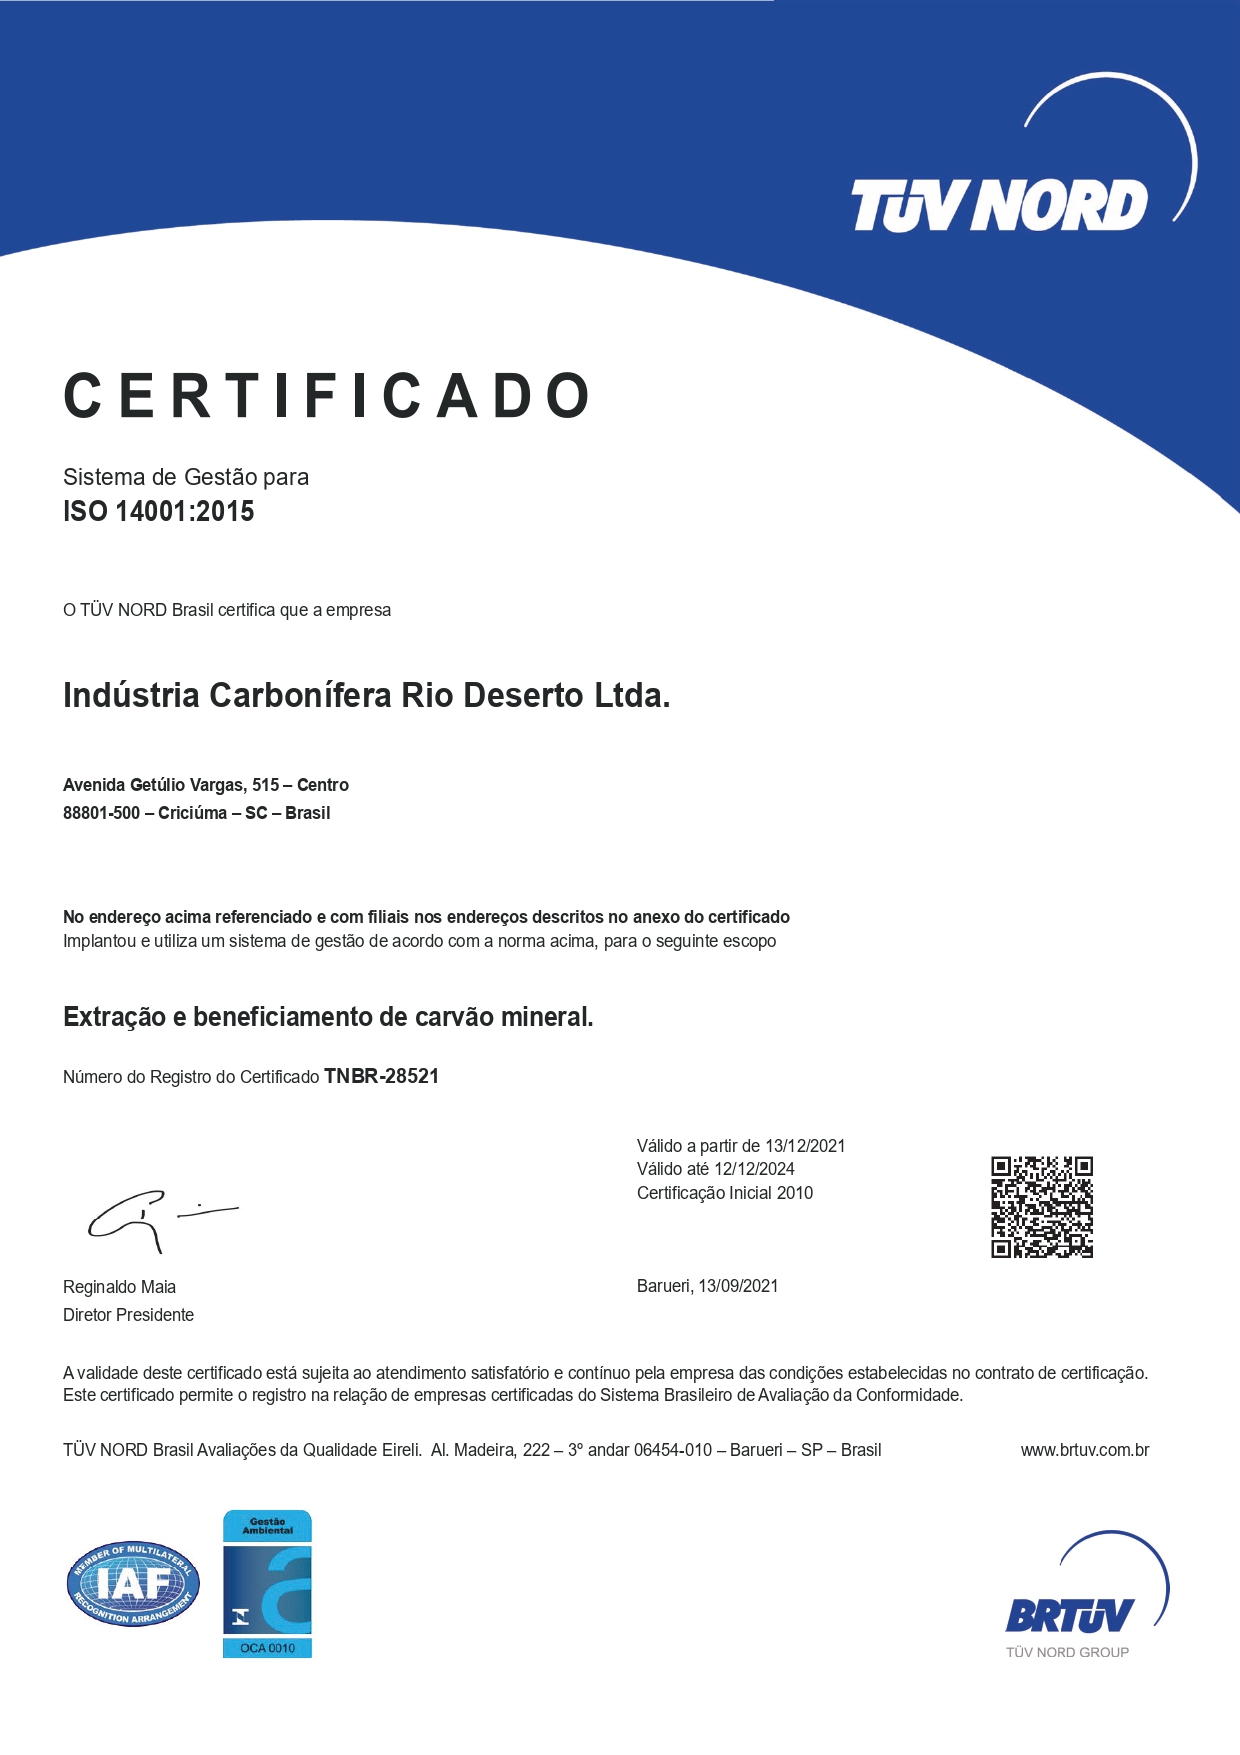 Sistema de gestão certificado na NBR ISO 14001:2015